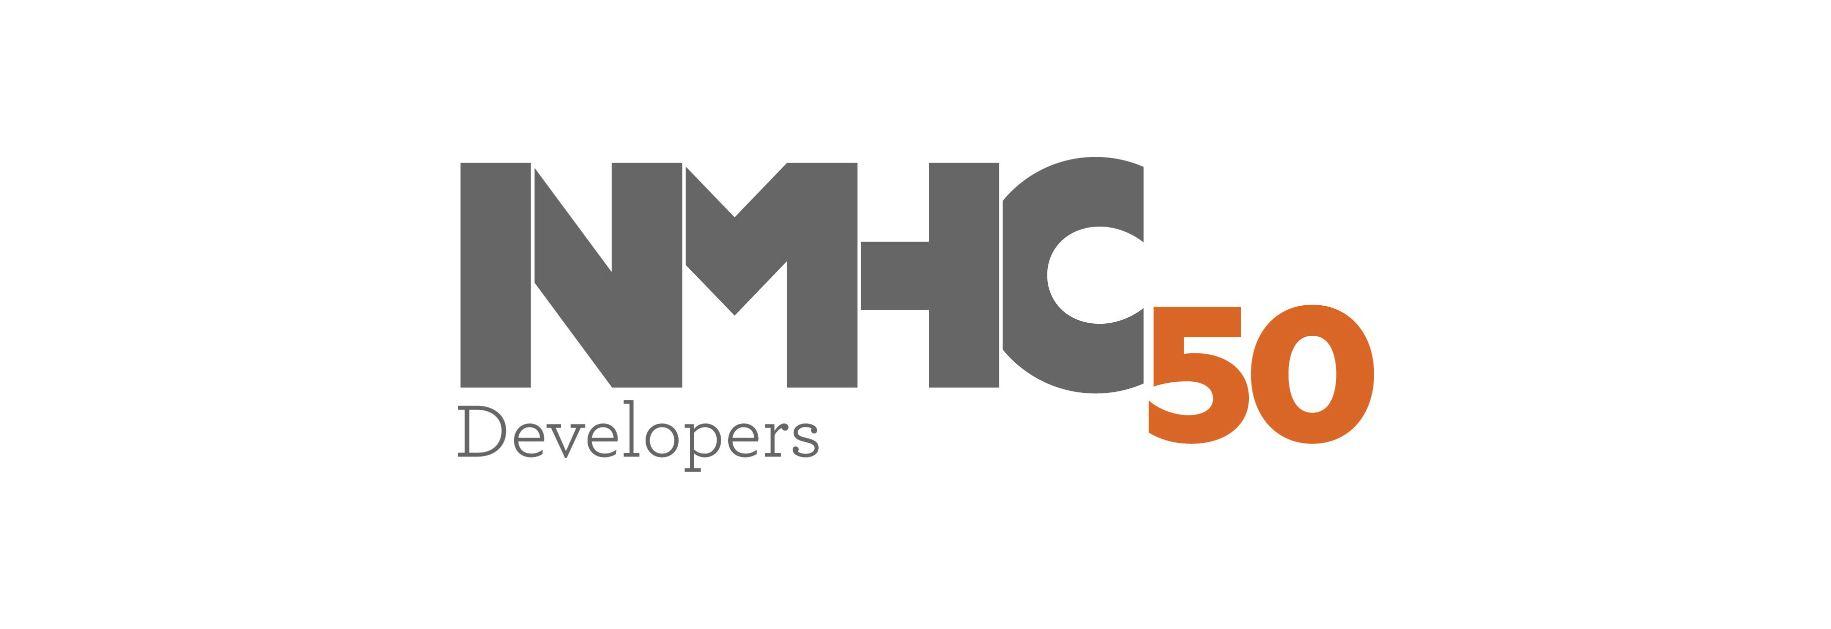 Developers Logo - NMHC 50 Developers Logo - LMC